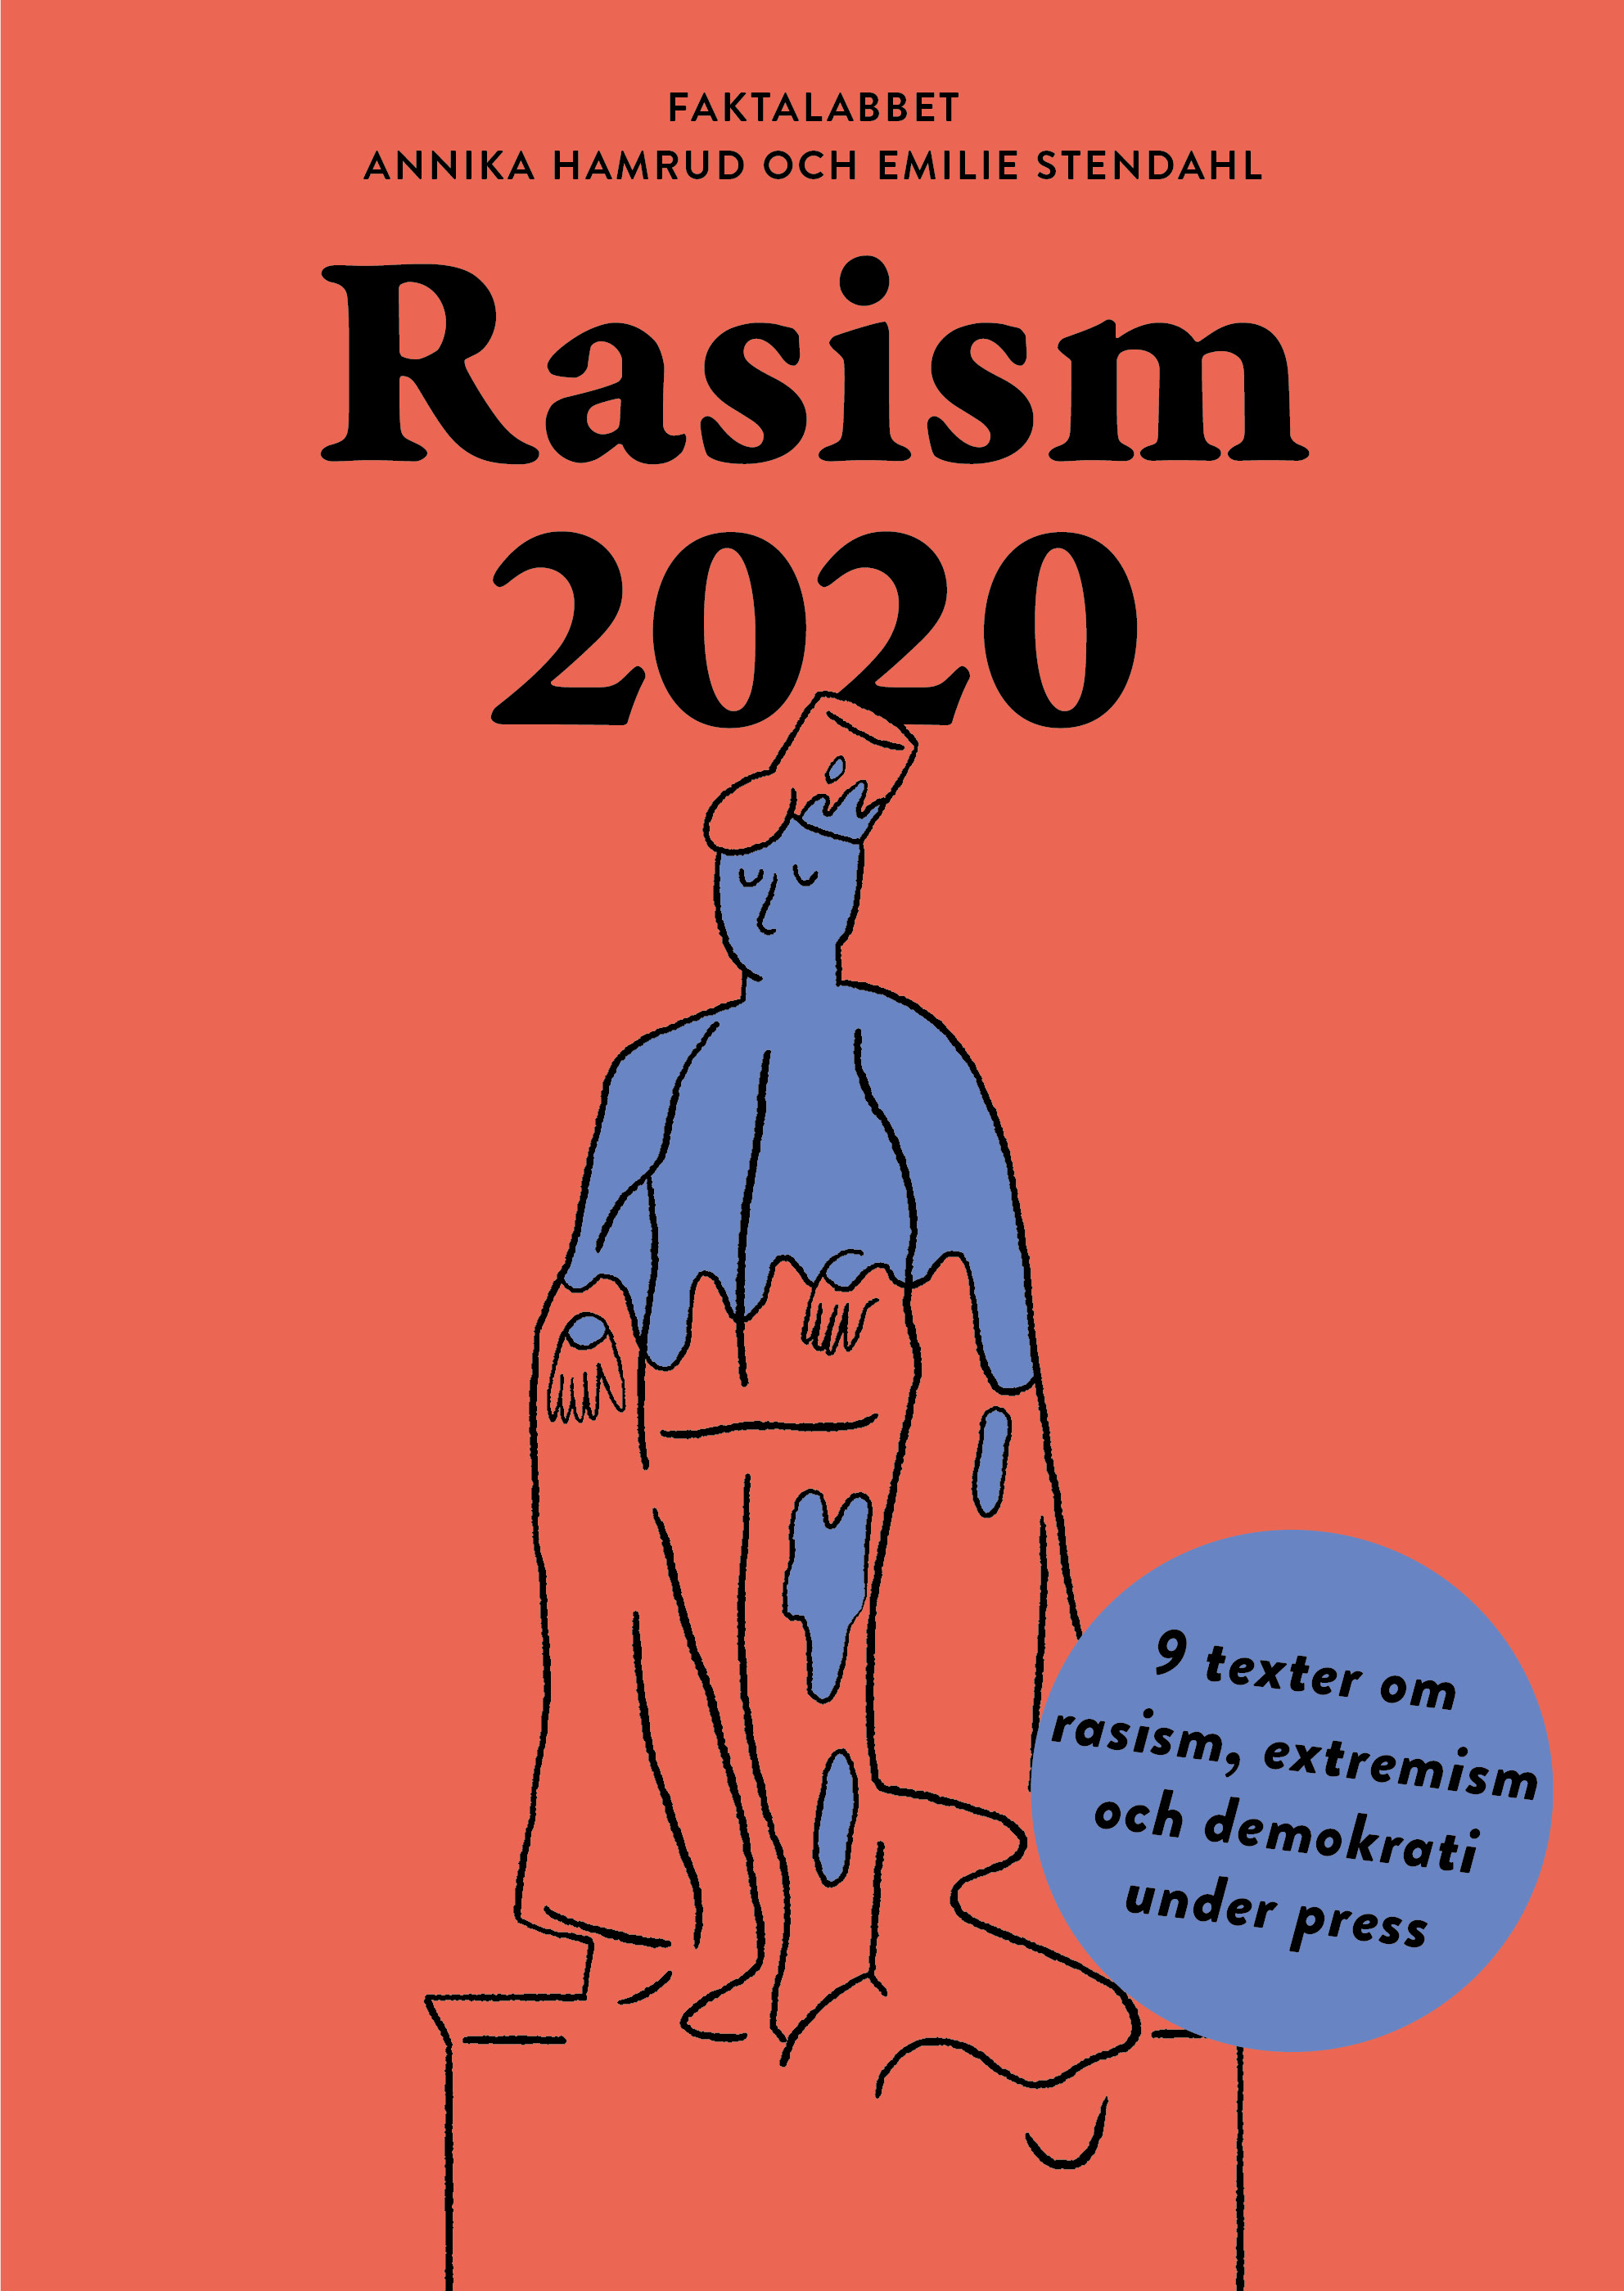 Faktalabbet: Rasism 2020